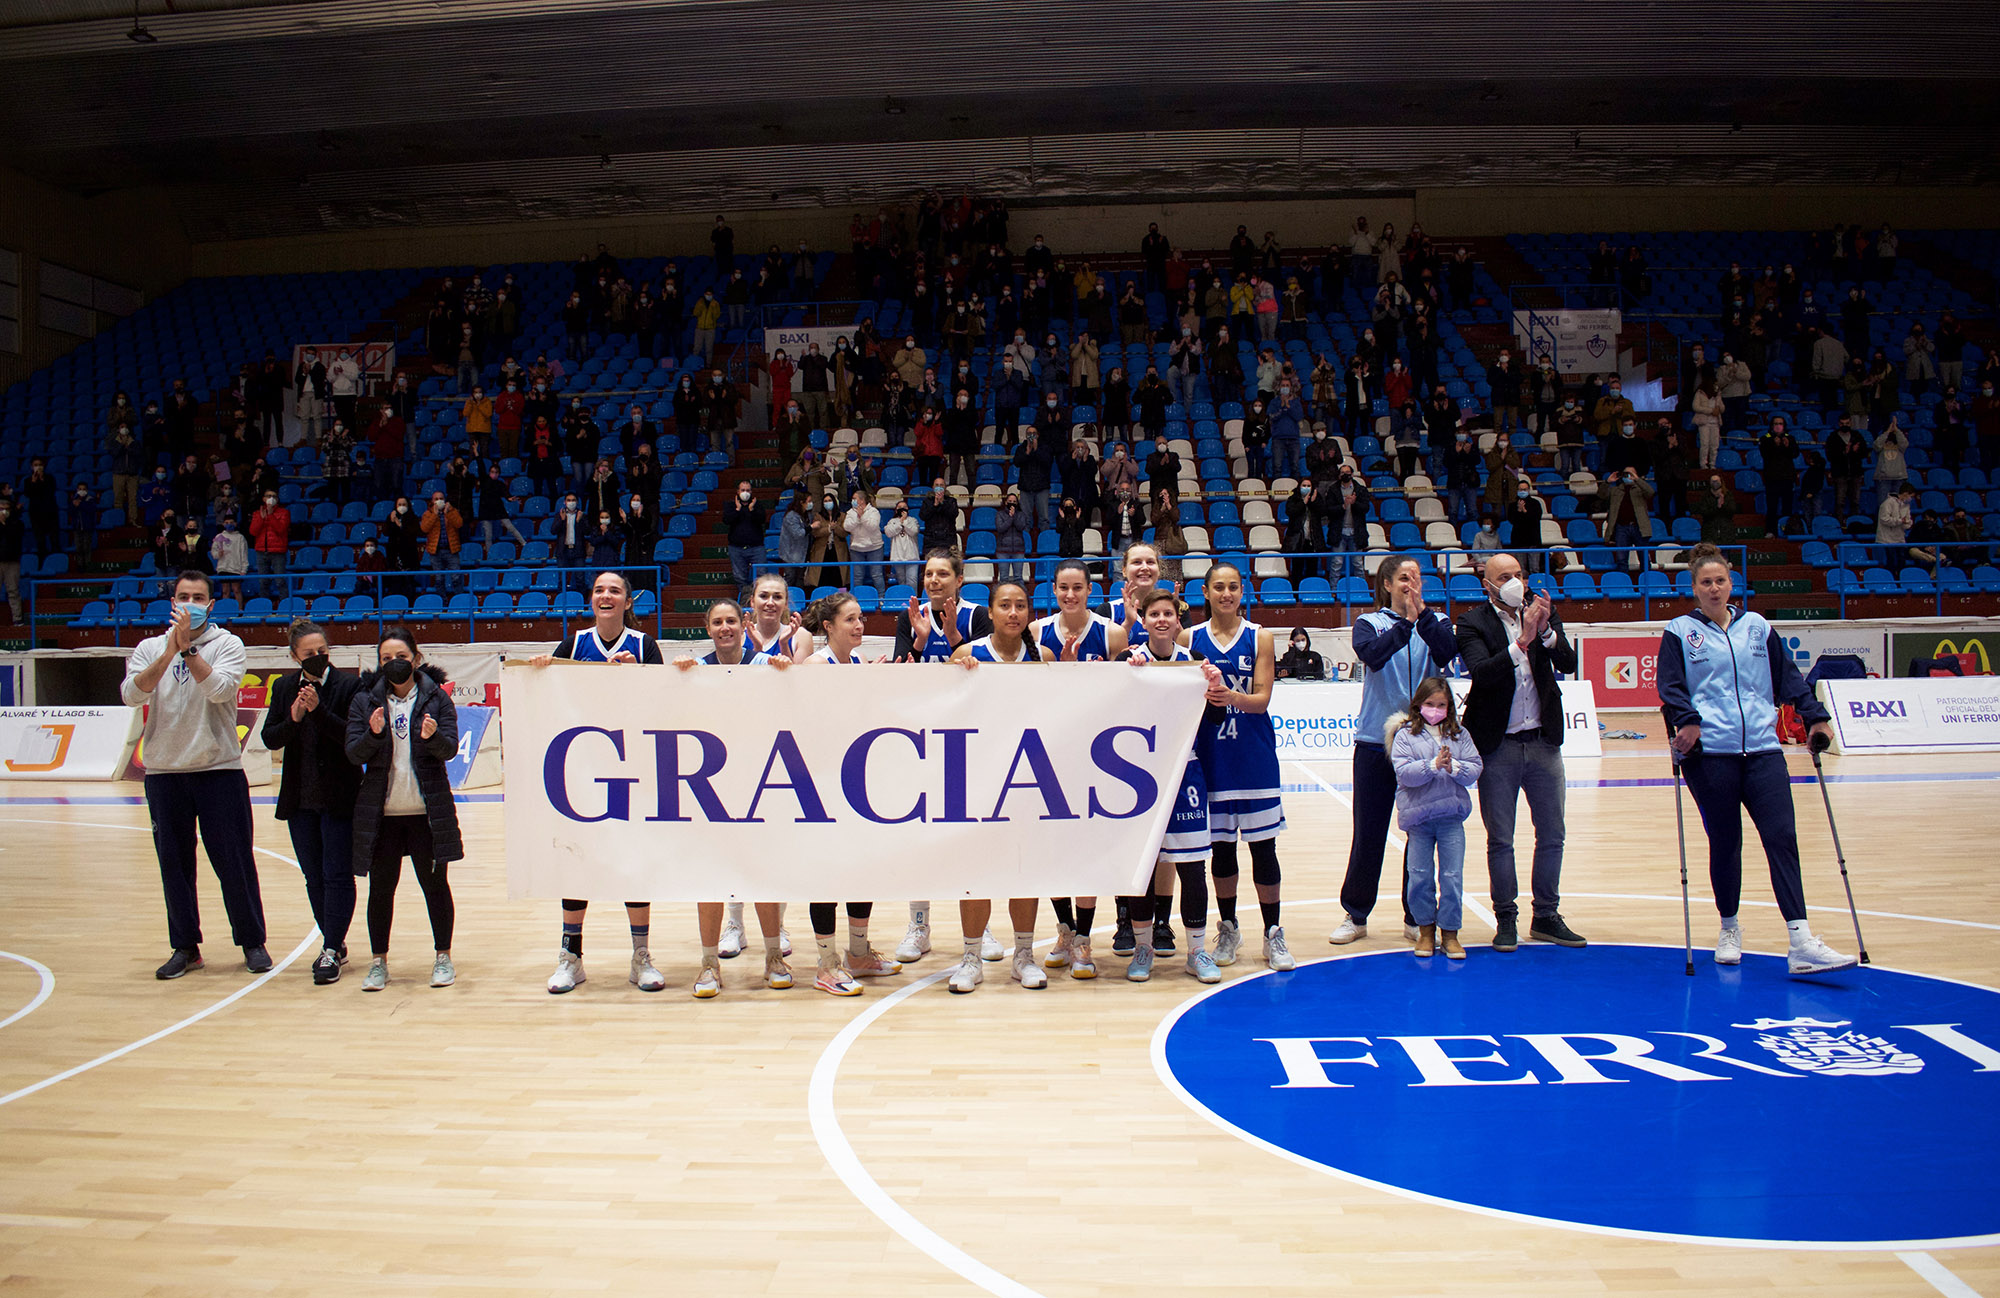 O BAXI Ferrol agradece á súa afección o apoio no seu último partido na Malata deste curso / UNIVERSITARIO FERROL